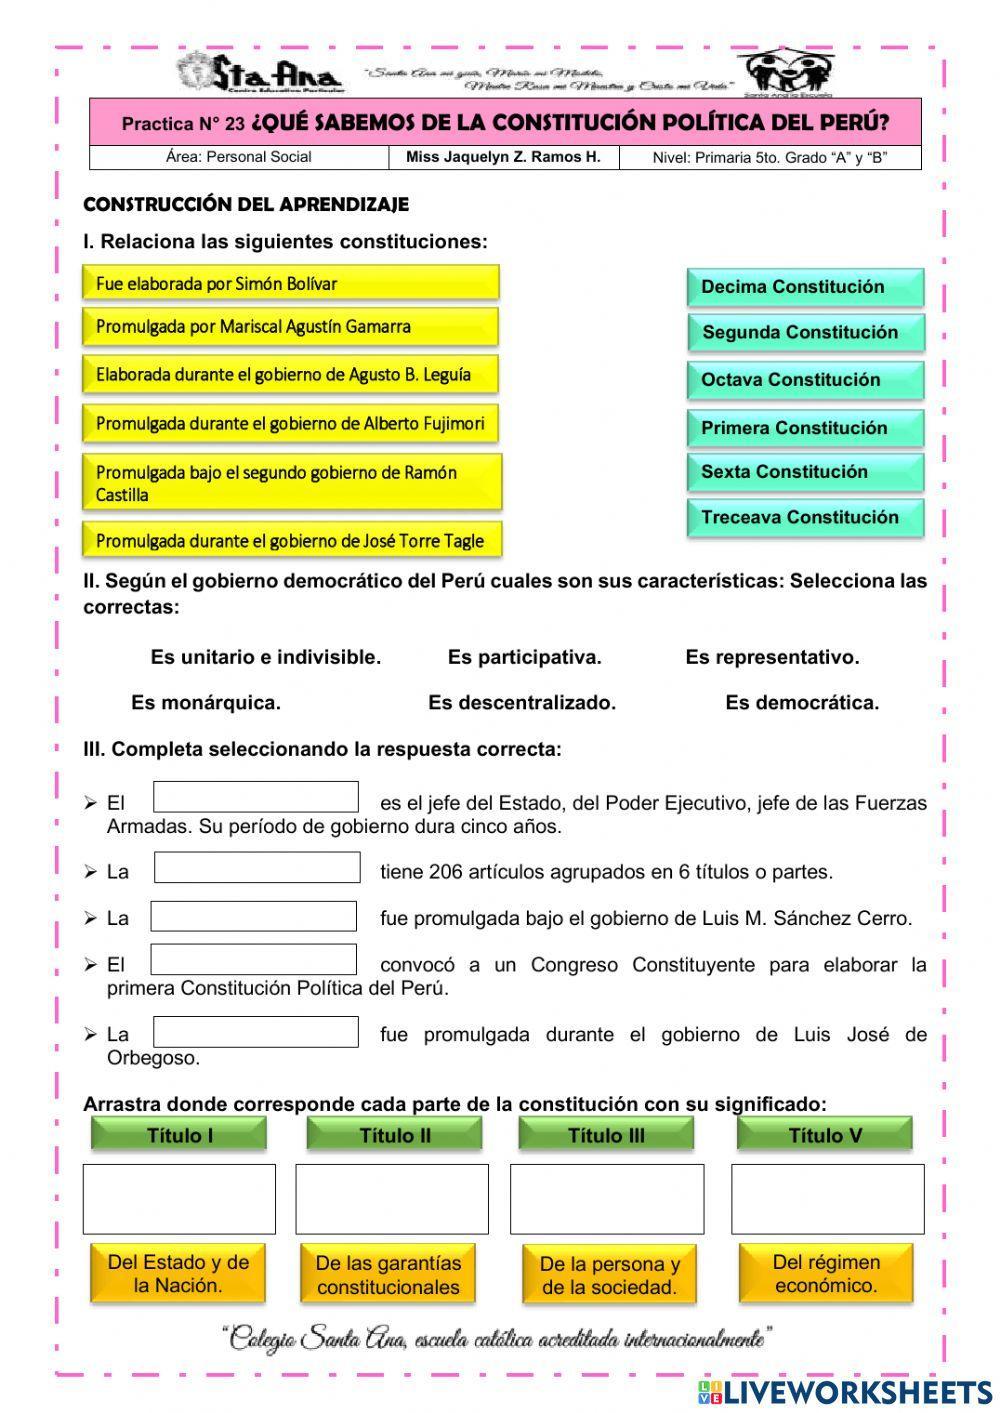 Constitución politica del perú